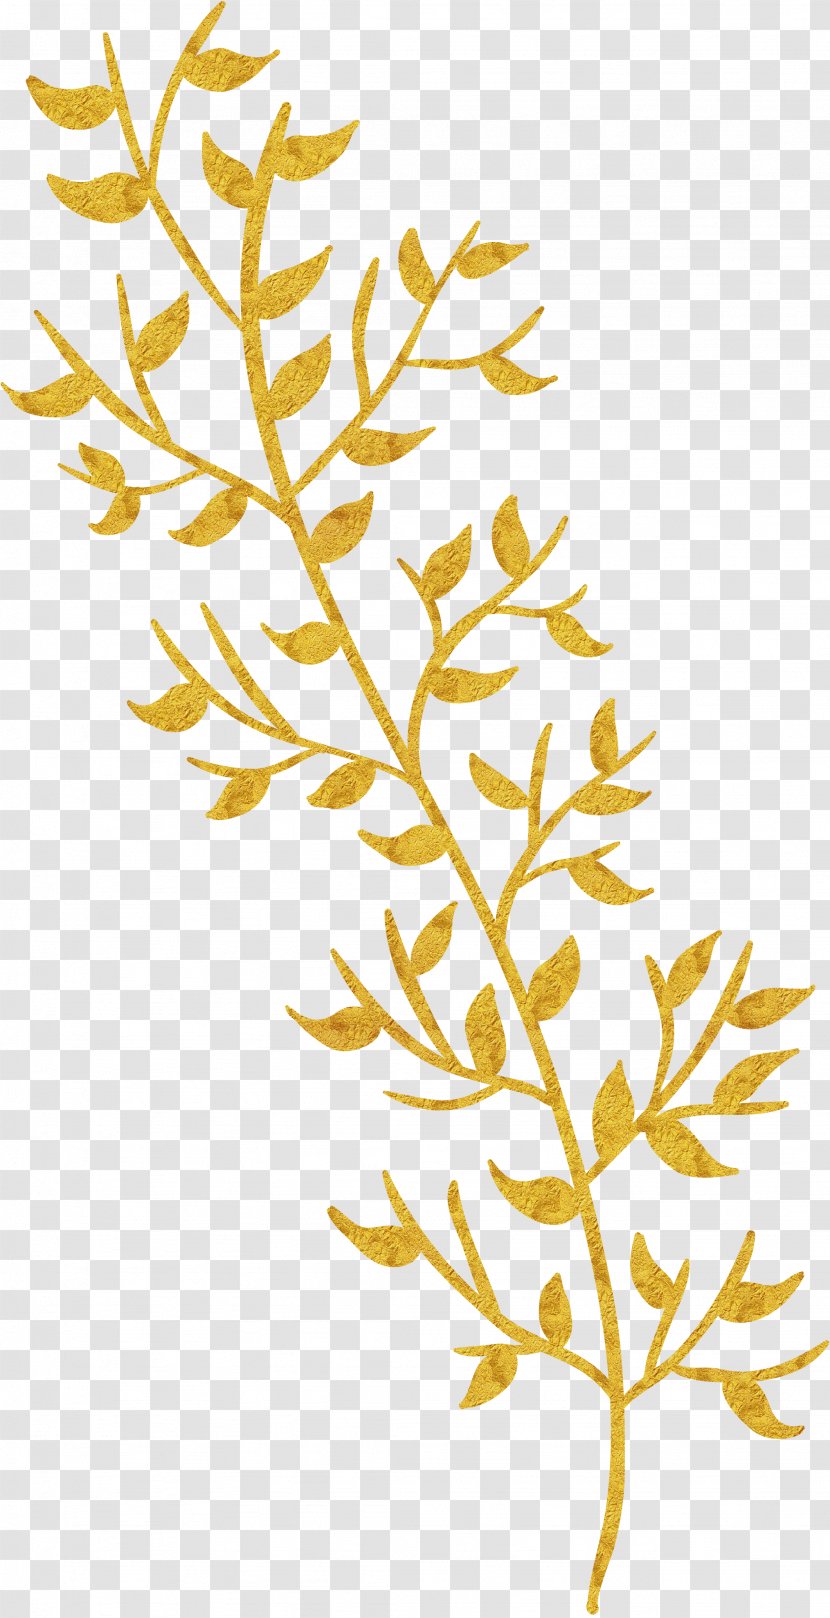 Leaf Gratis Download - Gold - Golden Leaves Transparent PNG